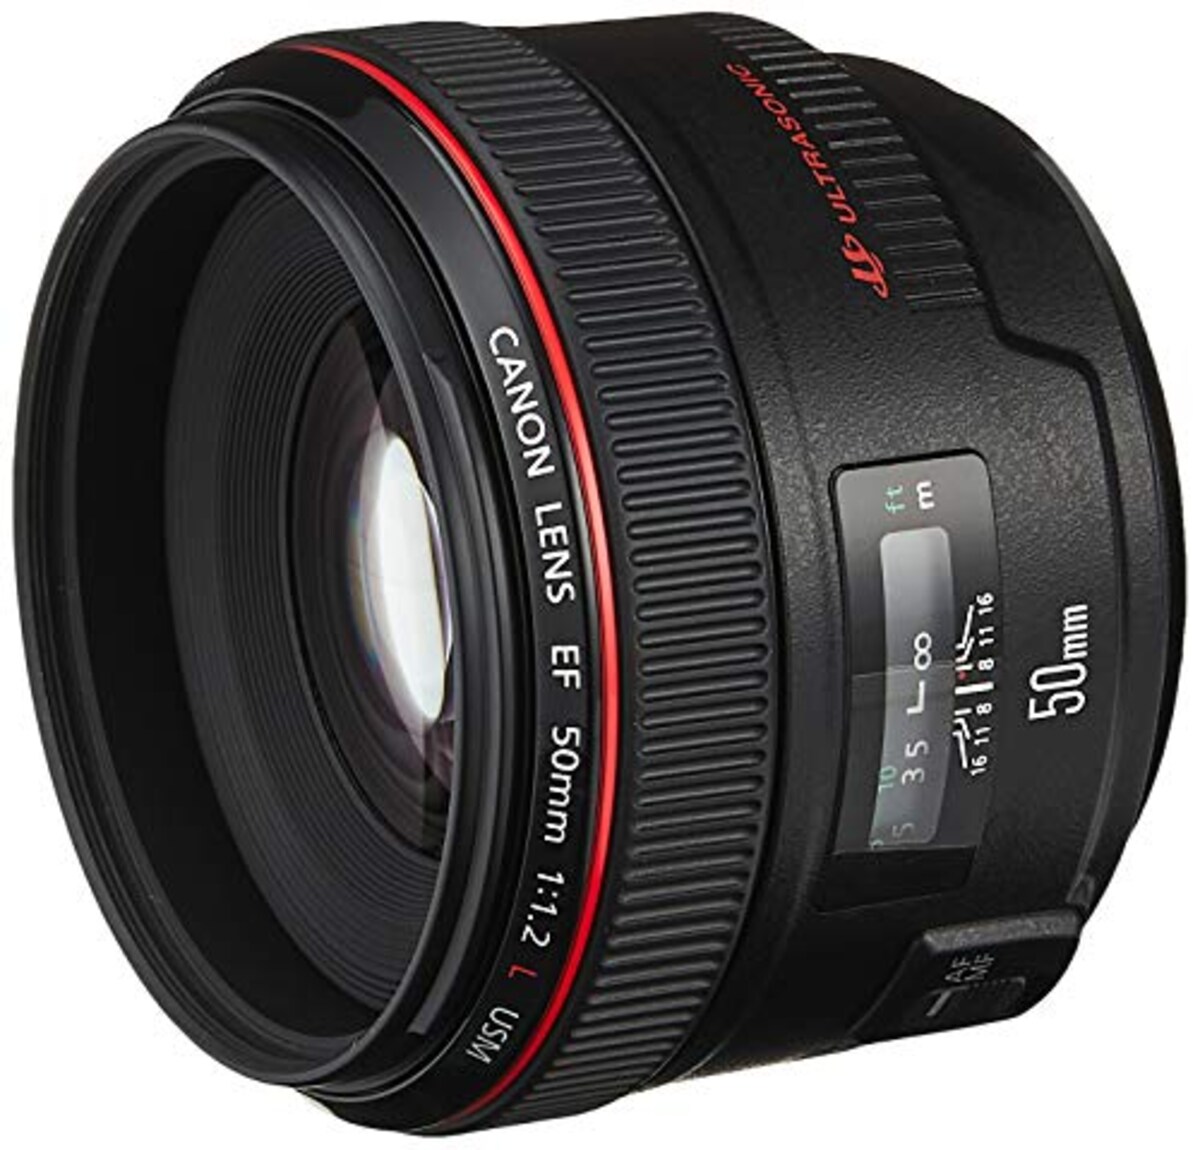  単焦点標準レンズ EF50mm F1.2L USM フルサイズ対応画像2 